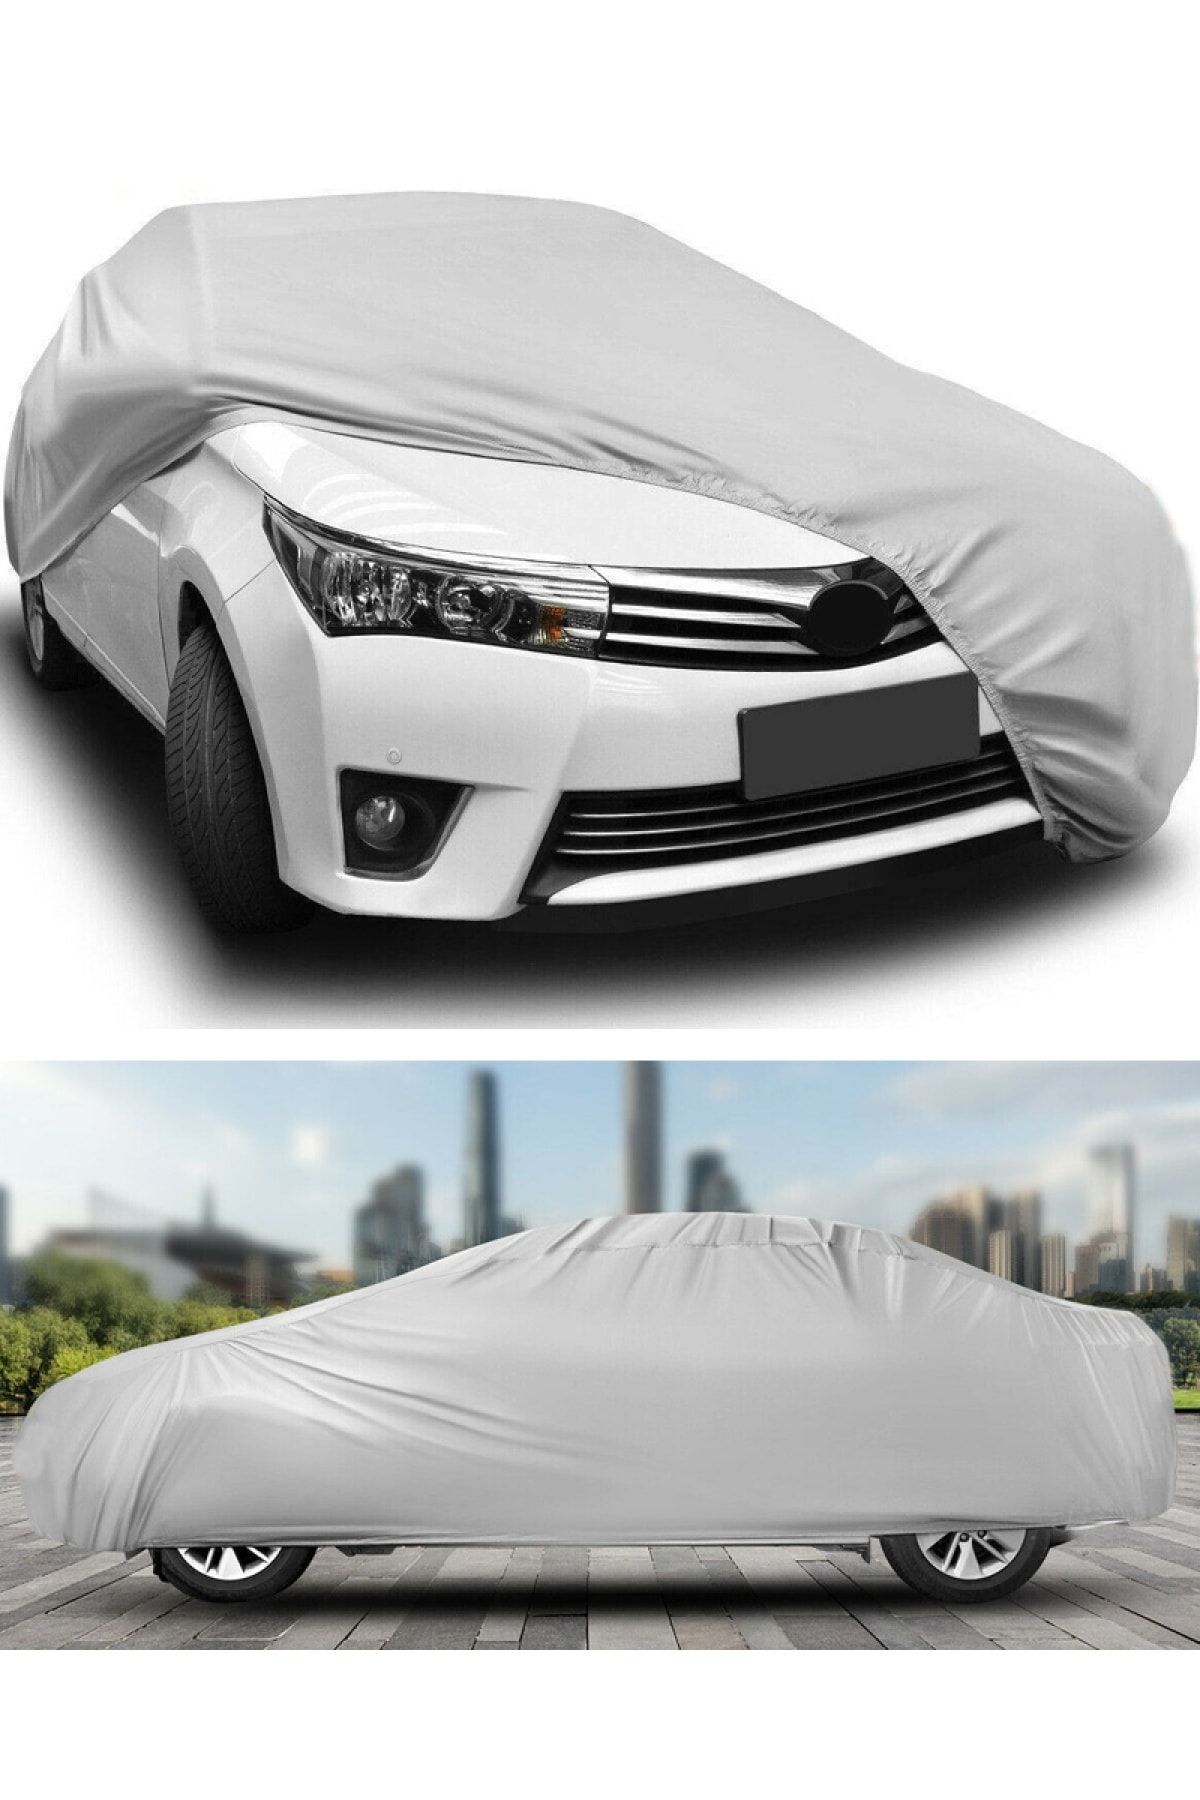 AutoEN Toyota Corolla Sedan Branda Lüx Kalite Oto Brandası,araba Çadırı (2018-2021) MOEQ10471